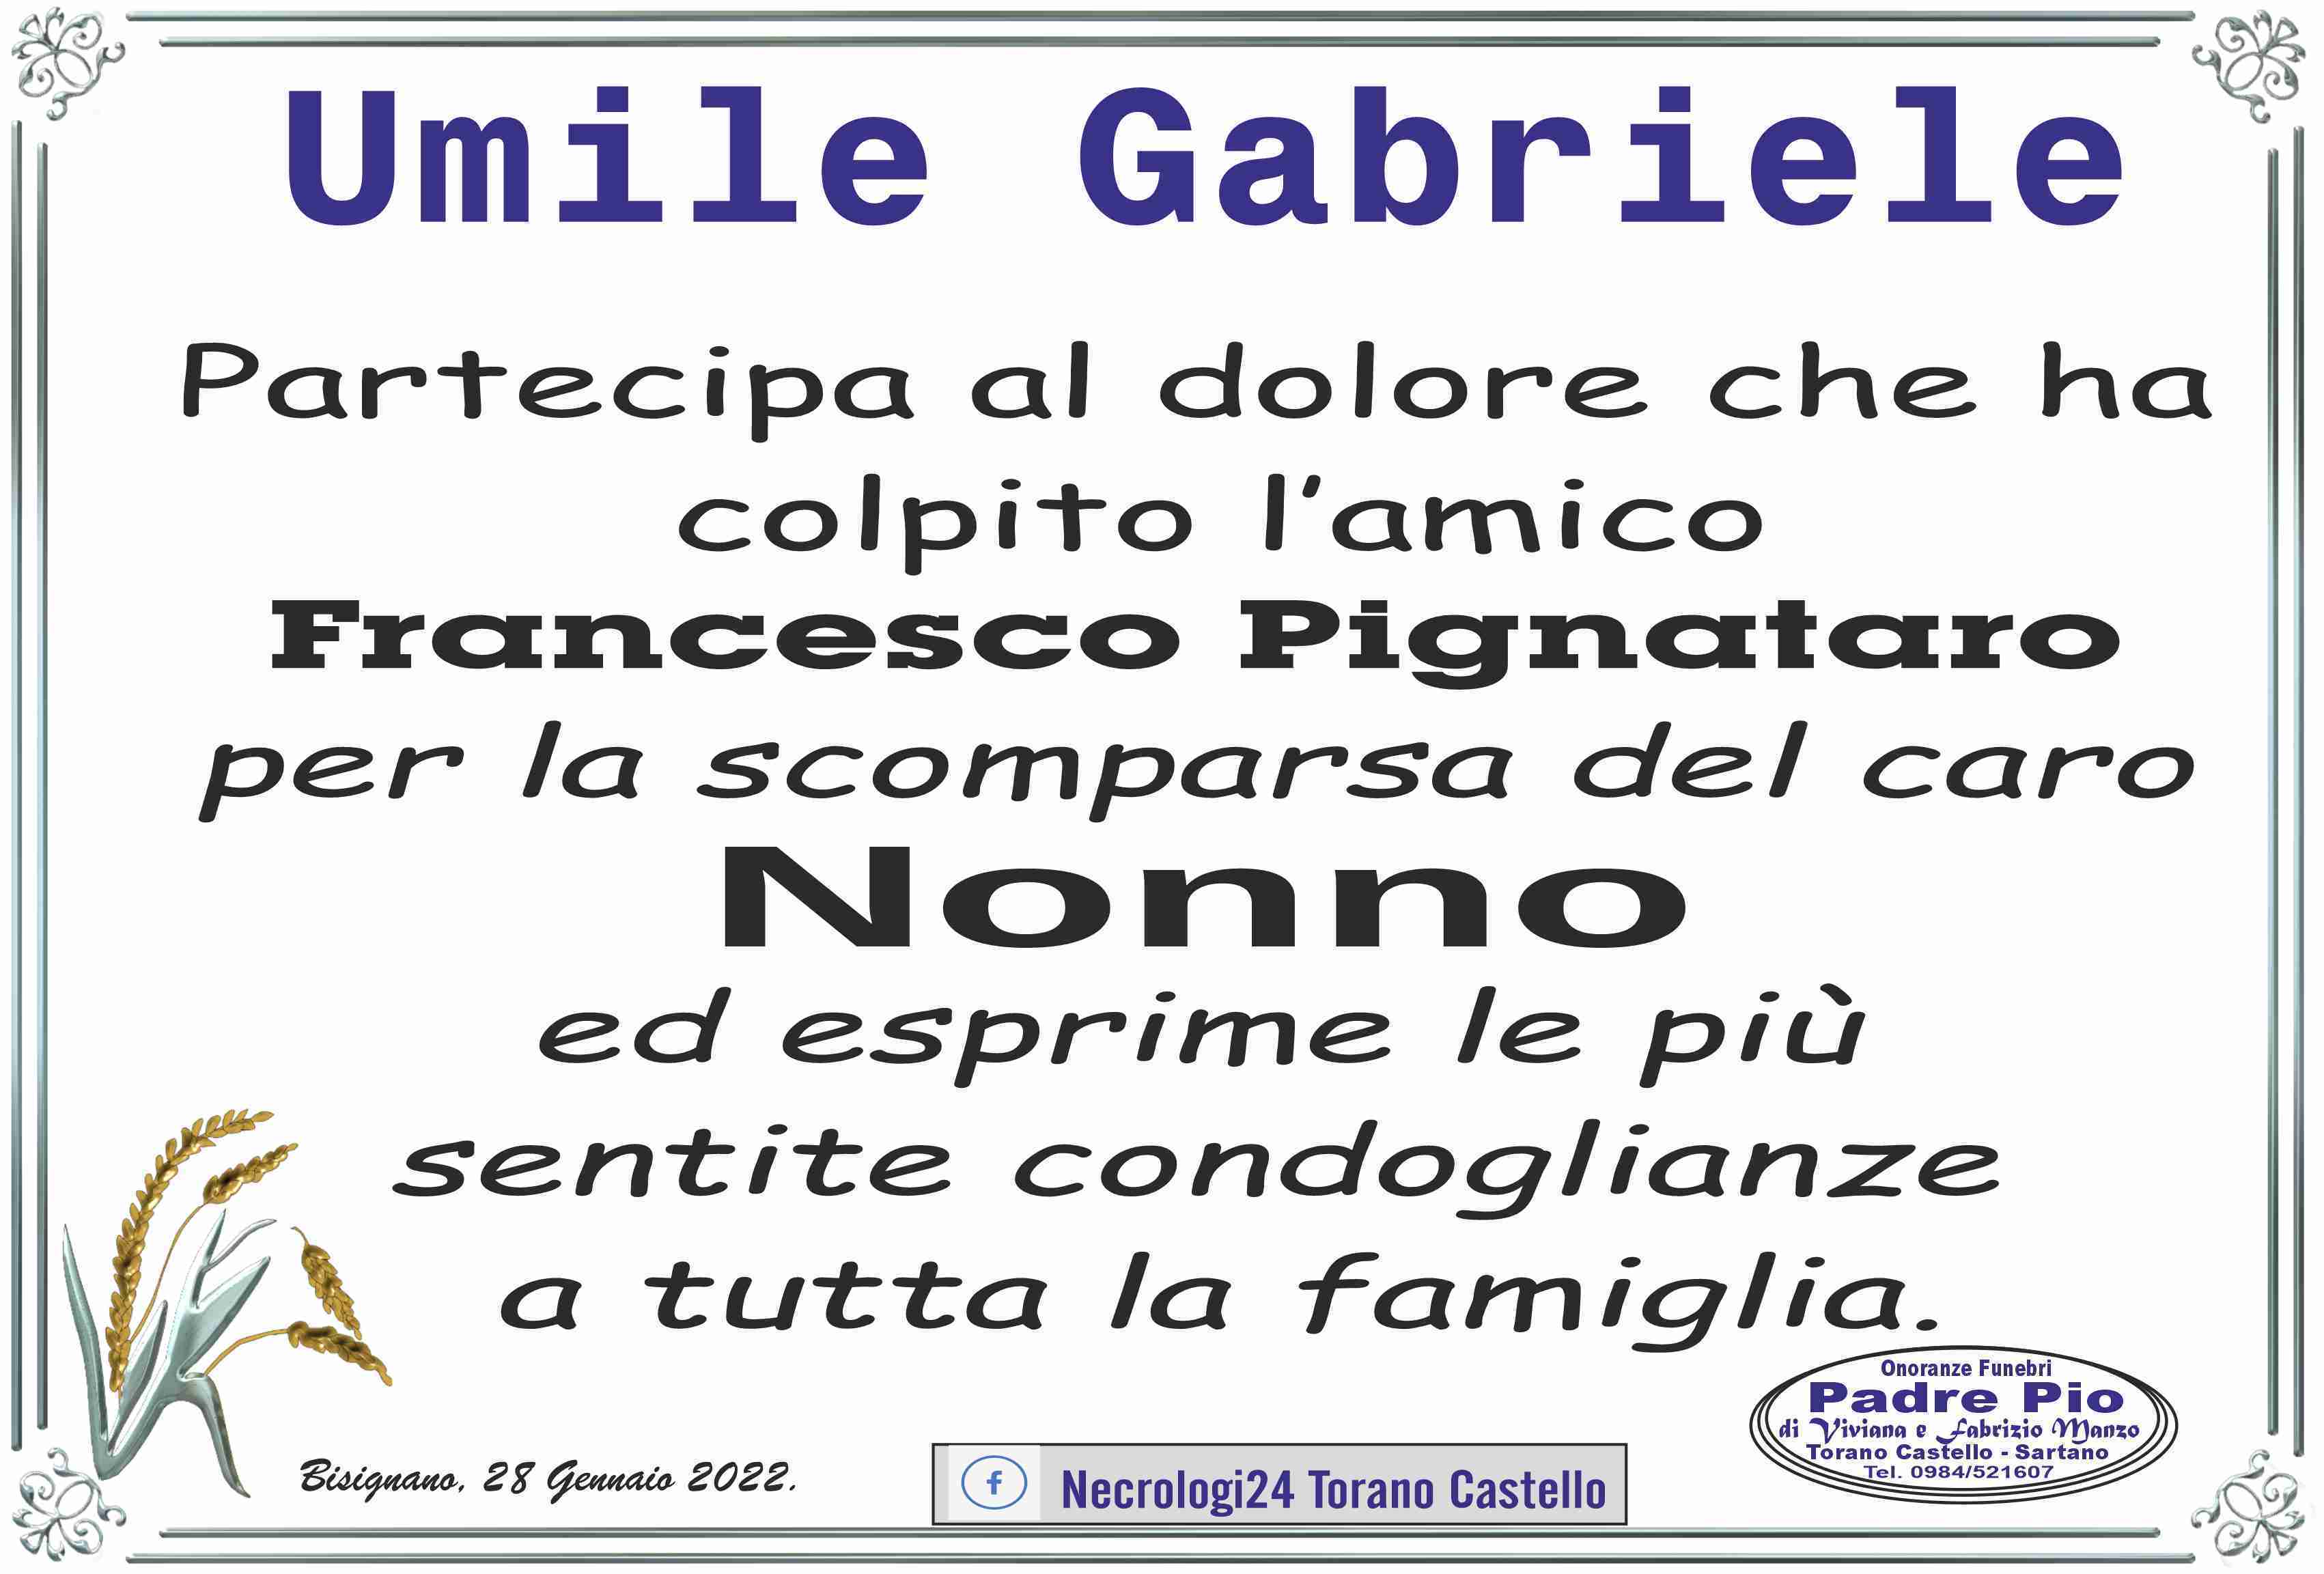 Gabriele Umile